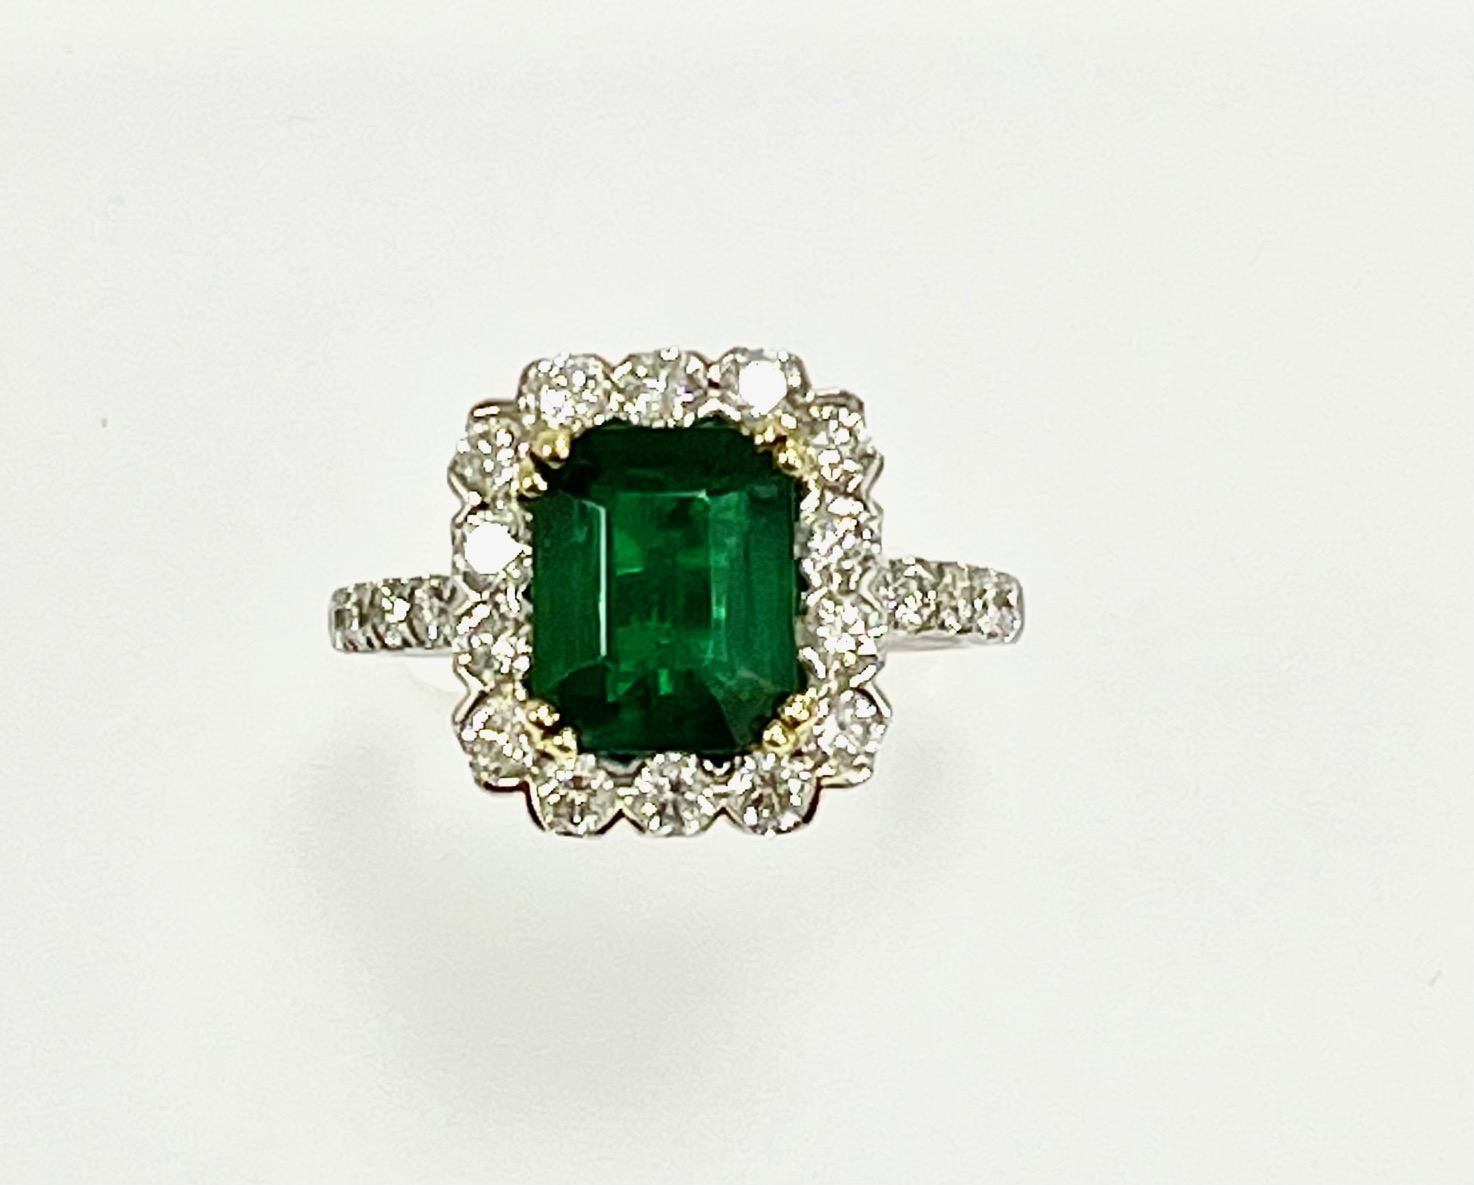 2.44 Karat sambischer Smaragd im Smaragdschliff, gefasst in einem Ring aus 18 Karat Weißgold mit 1,22 Karat Diamanten um den Smaragd herum und auf halber Höhe des Schafts.